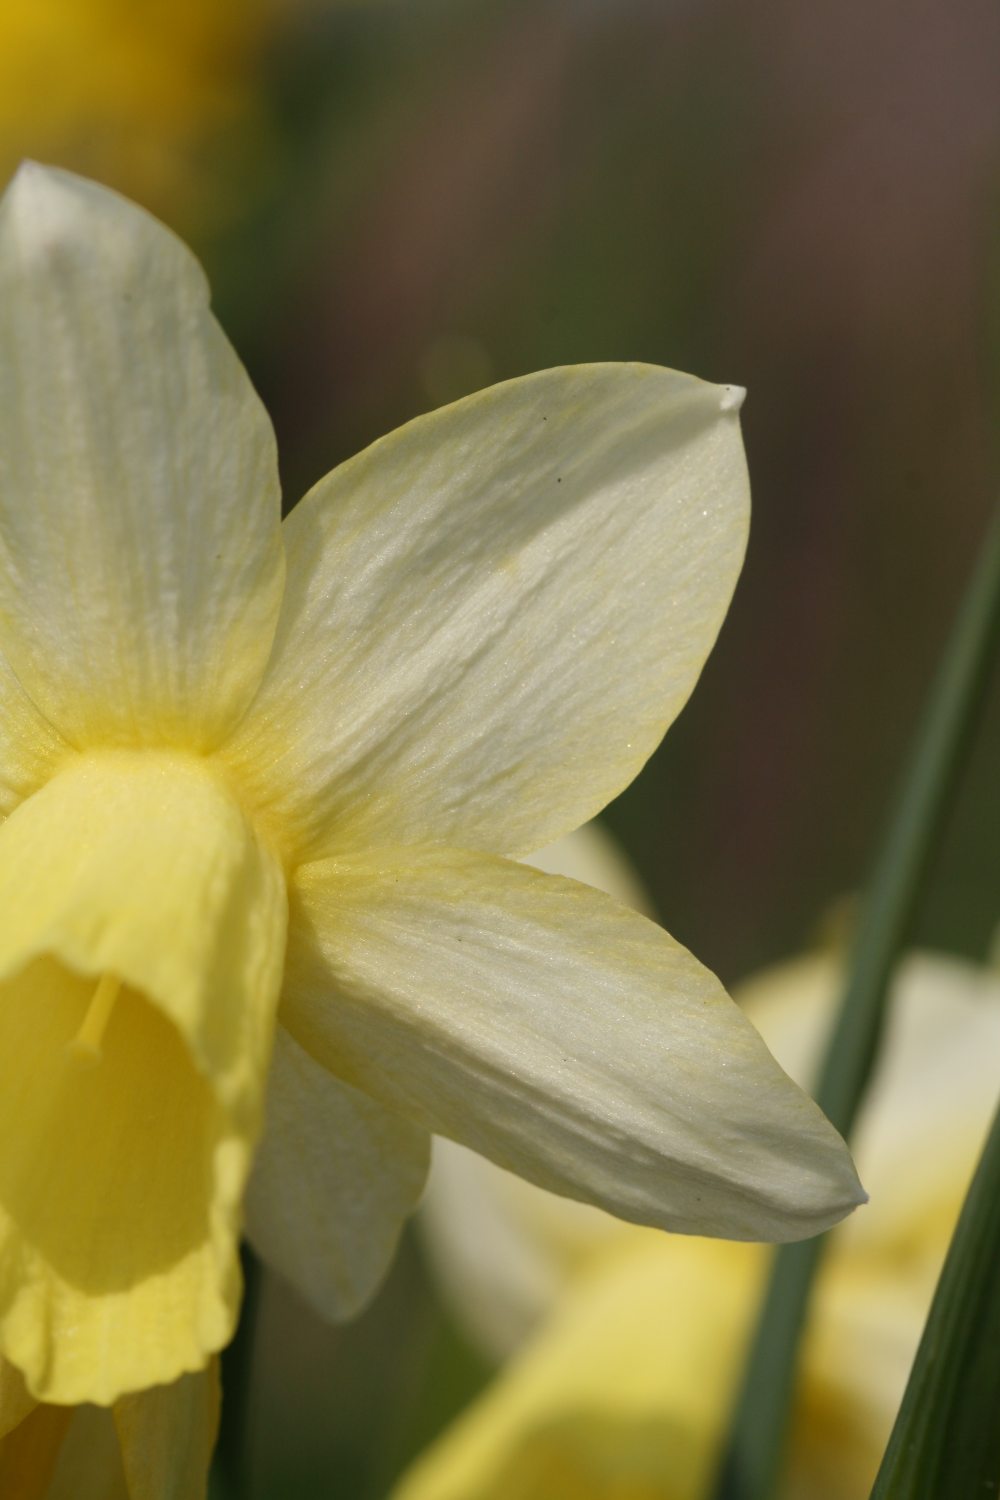 Narcissus 'Lemon Heart'